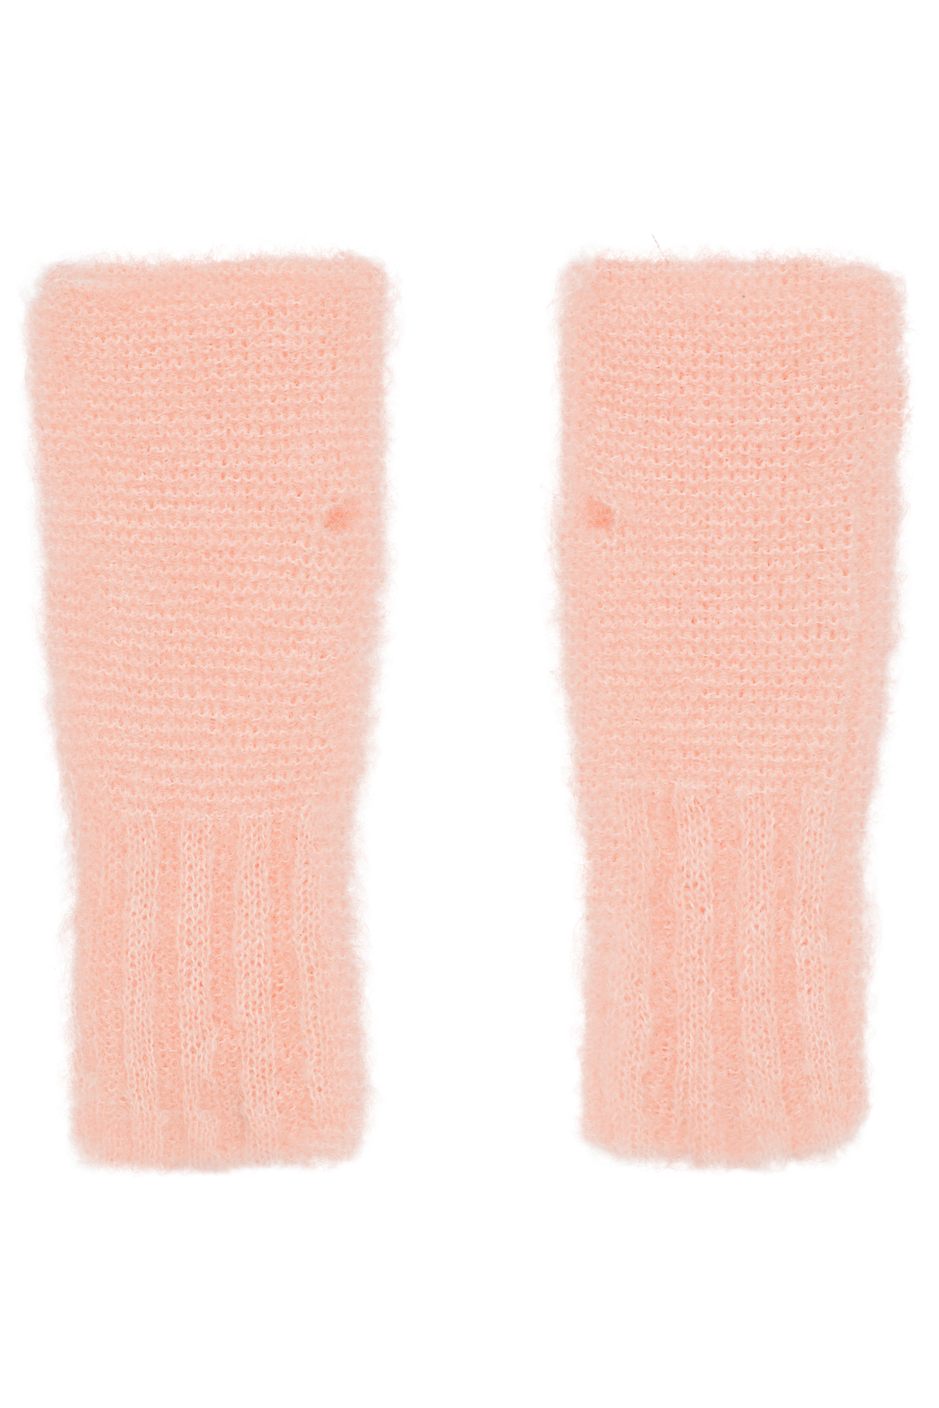 Tilly Fingerless Knit Gloves Peach - Sample